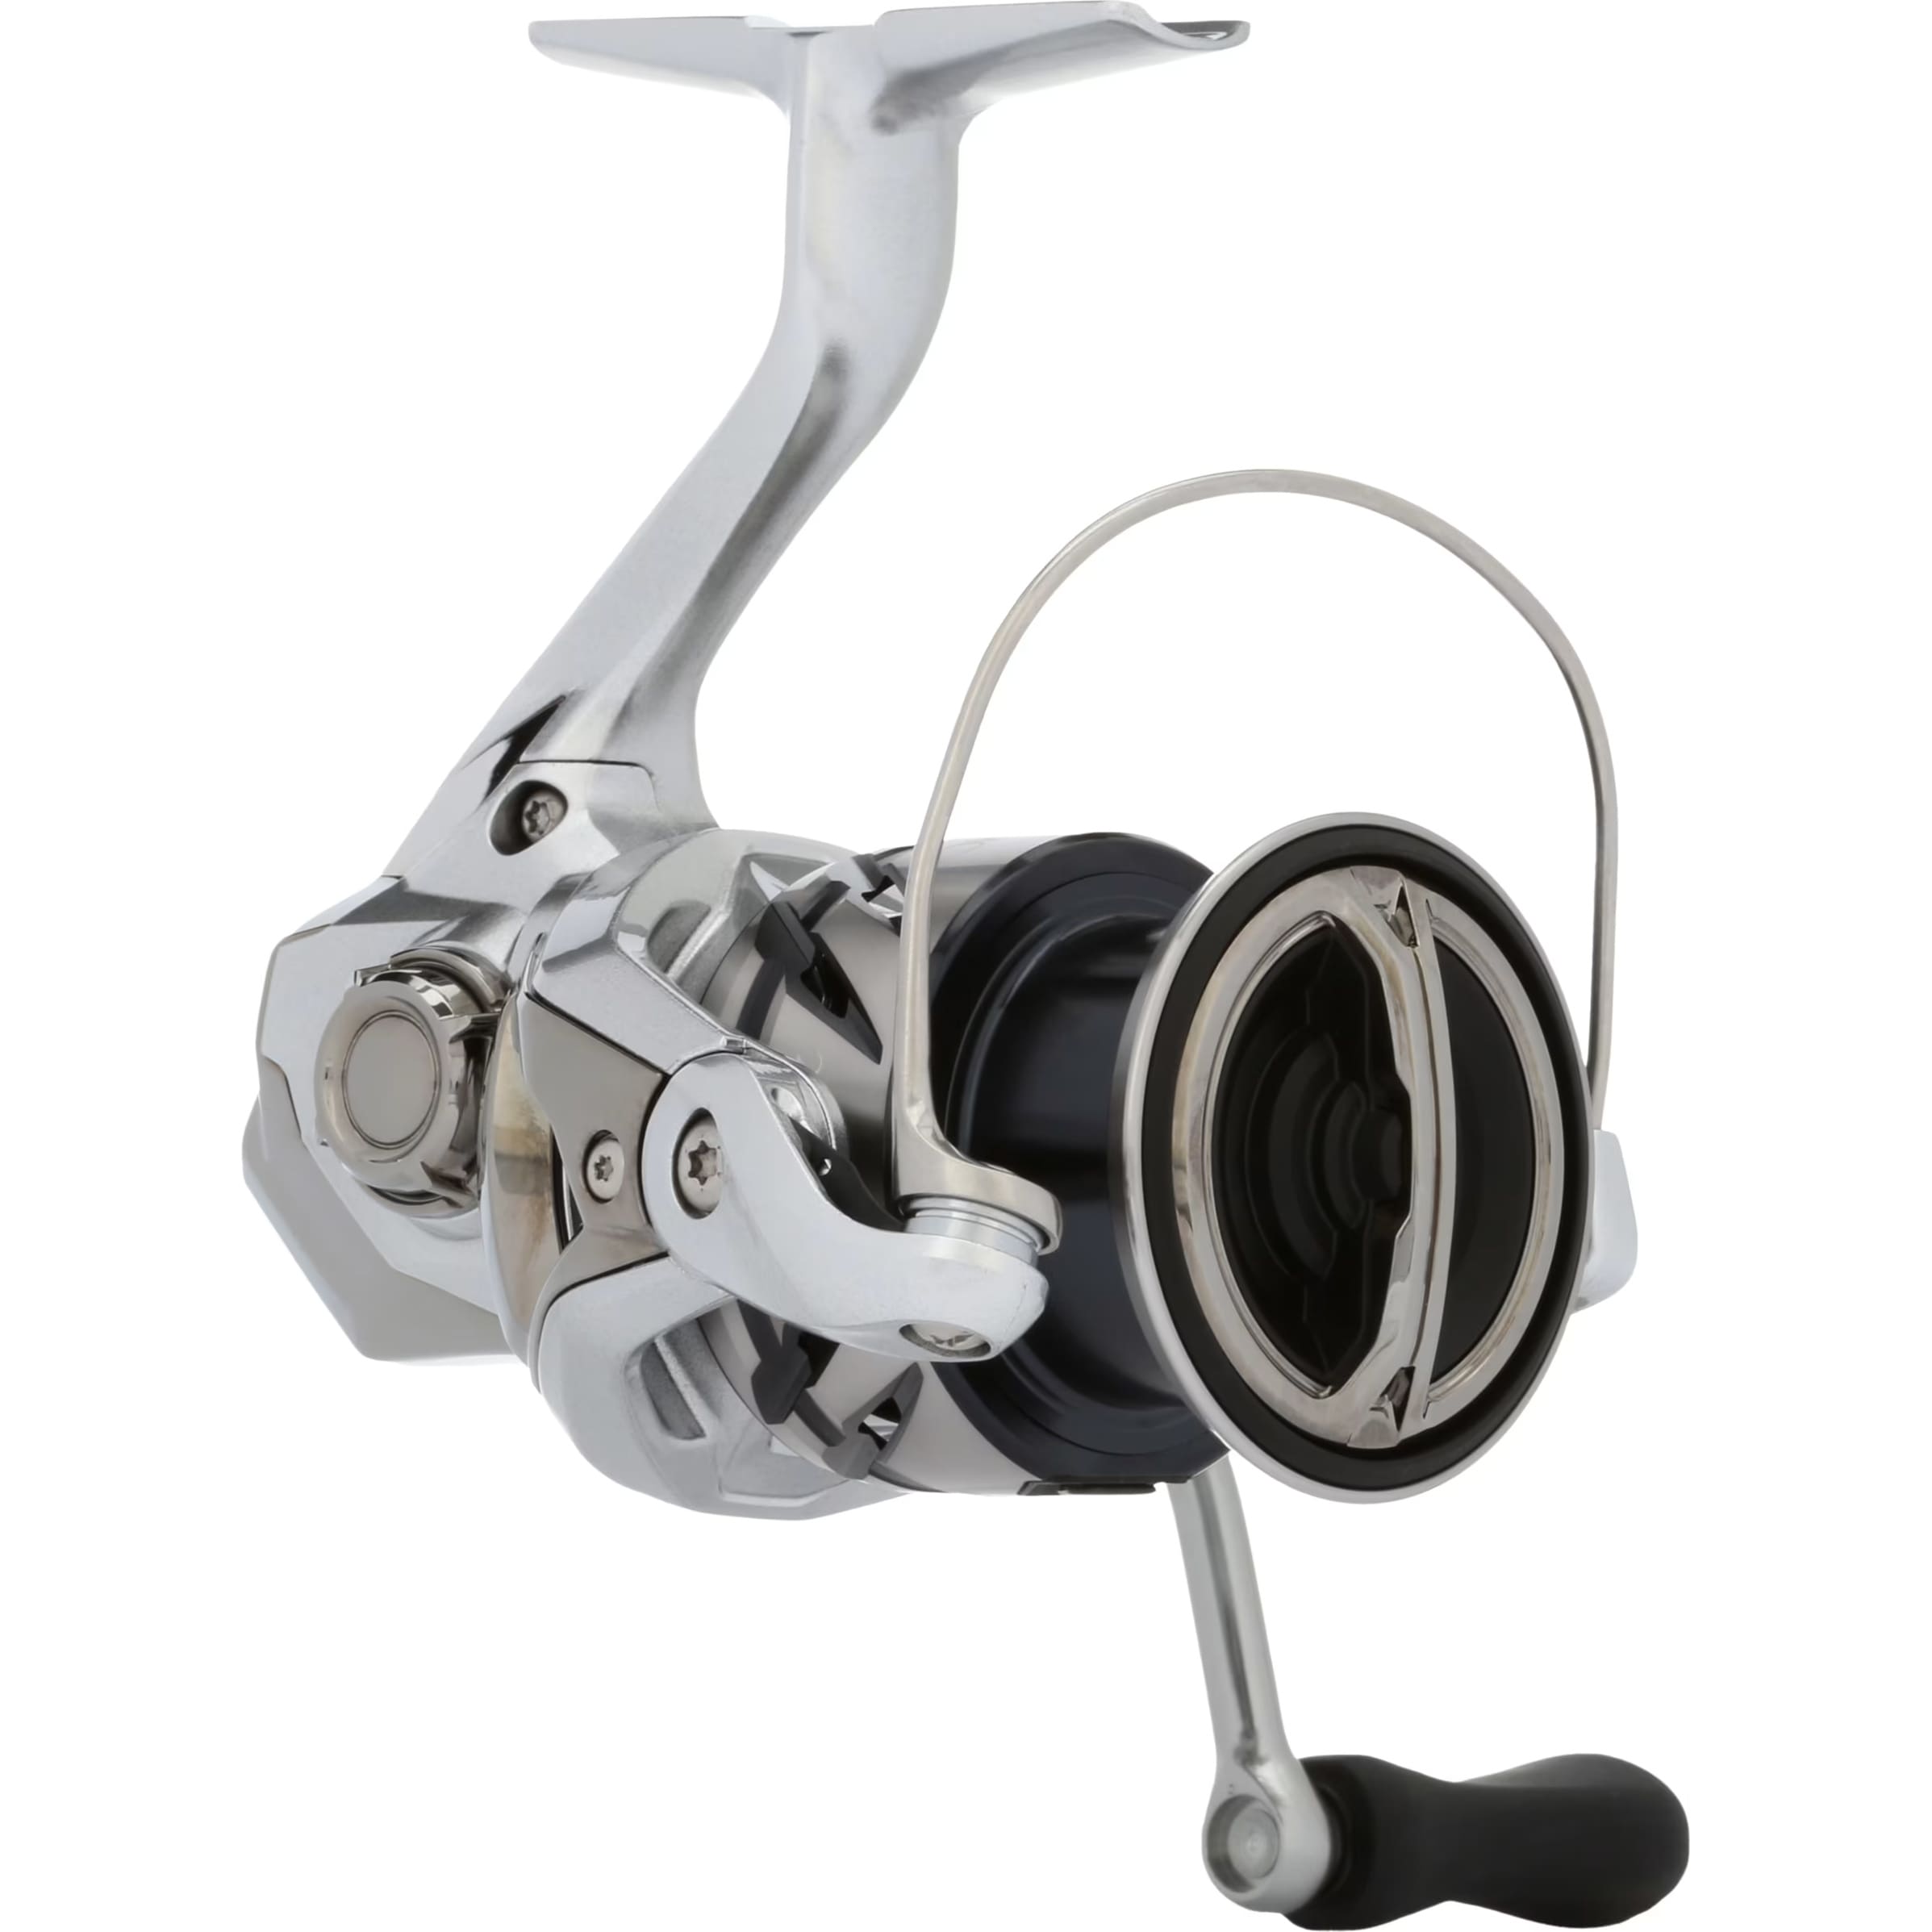 Shimano 19 STRADIC 4000 Spinning Reel Saltwater & Freshwater New